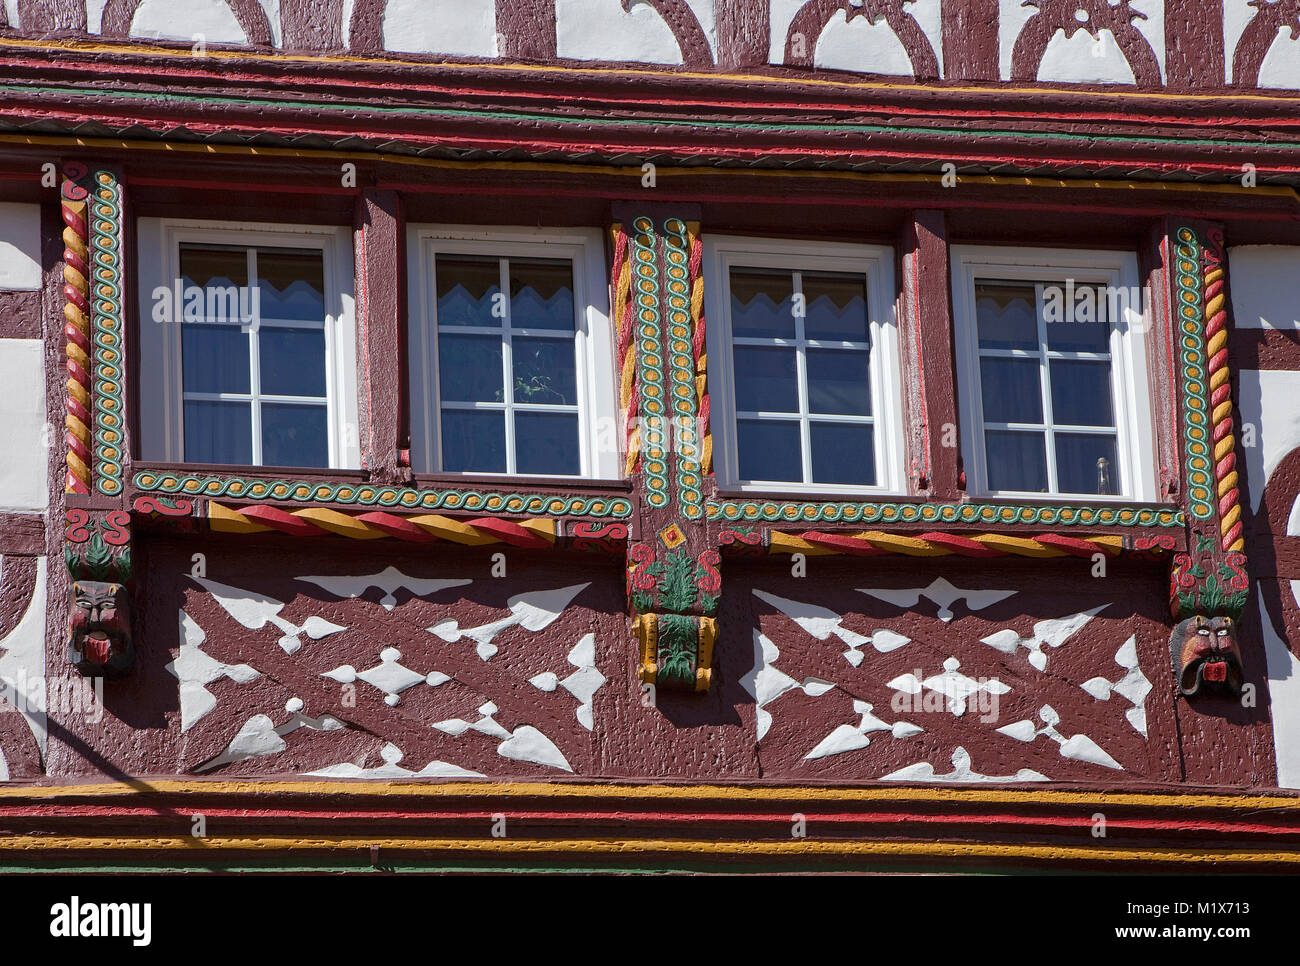 Half-timbered house facade at wine village Uerzig, Moselle river, Rhineland-Palatinate, Germany, Europe Stock Photo